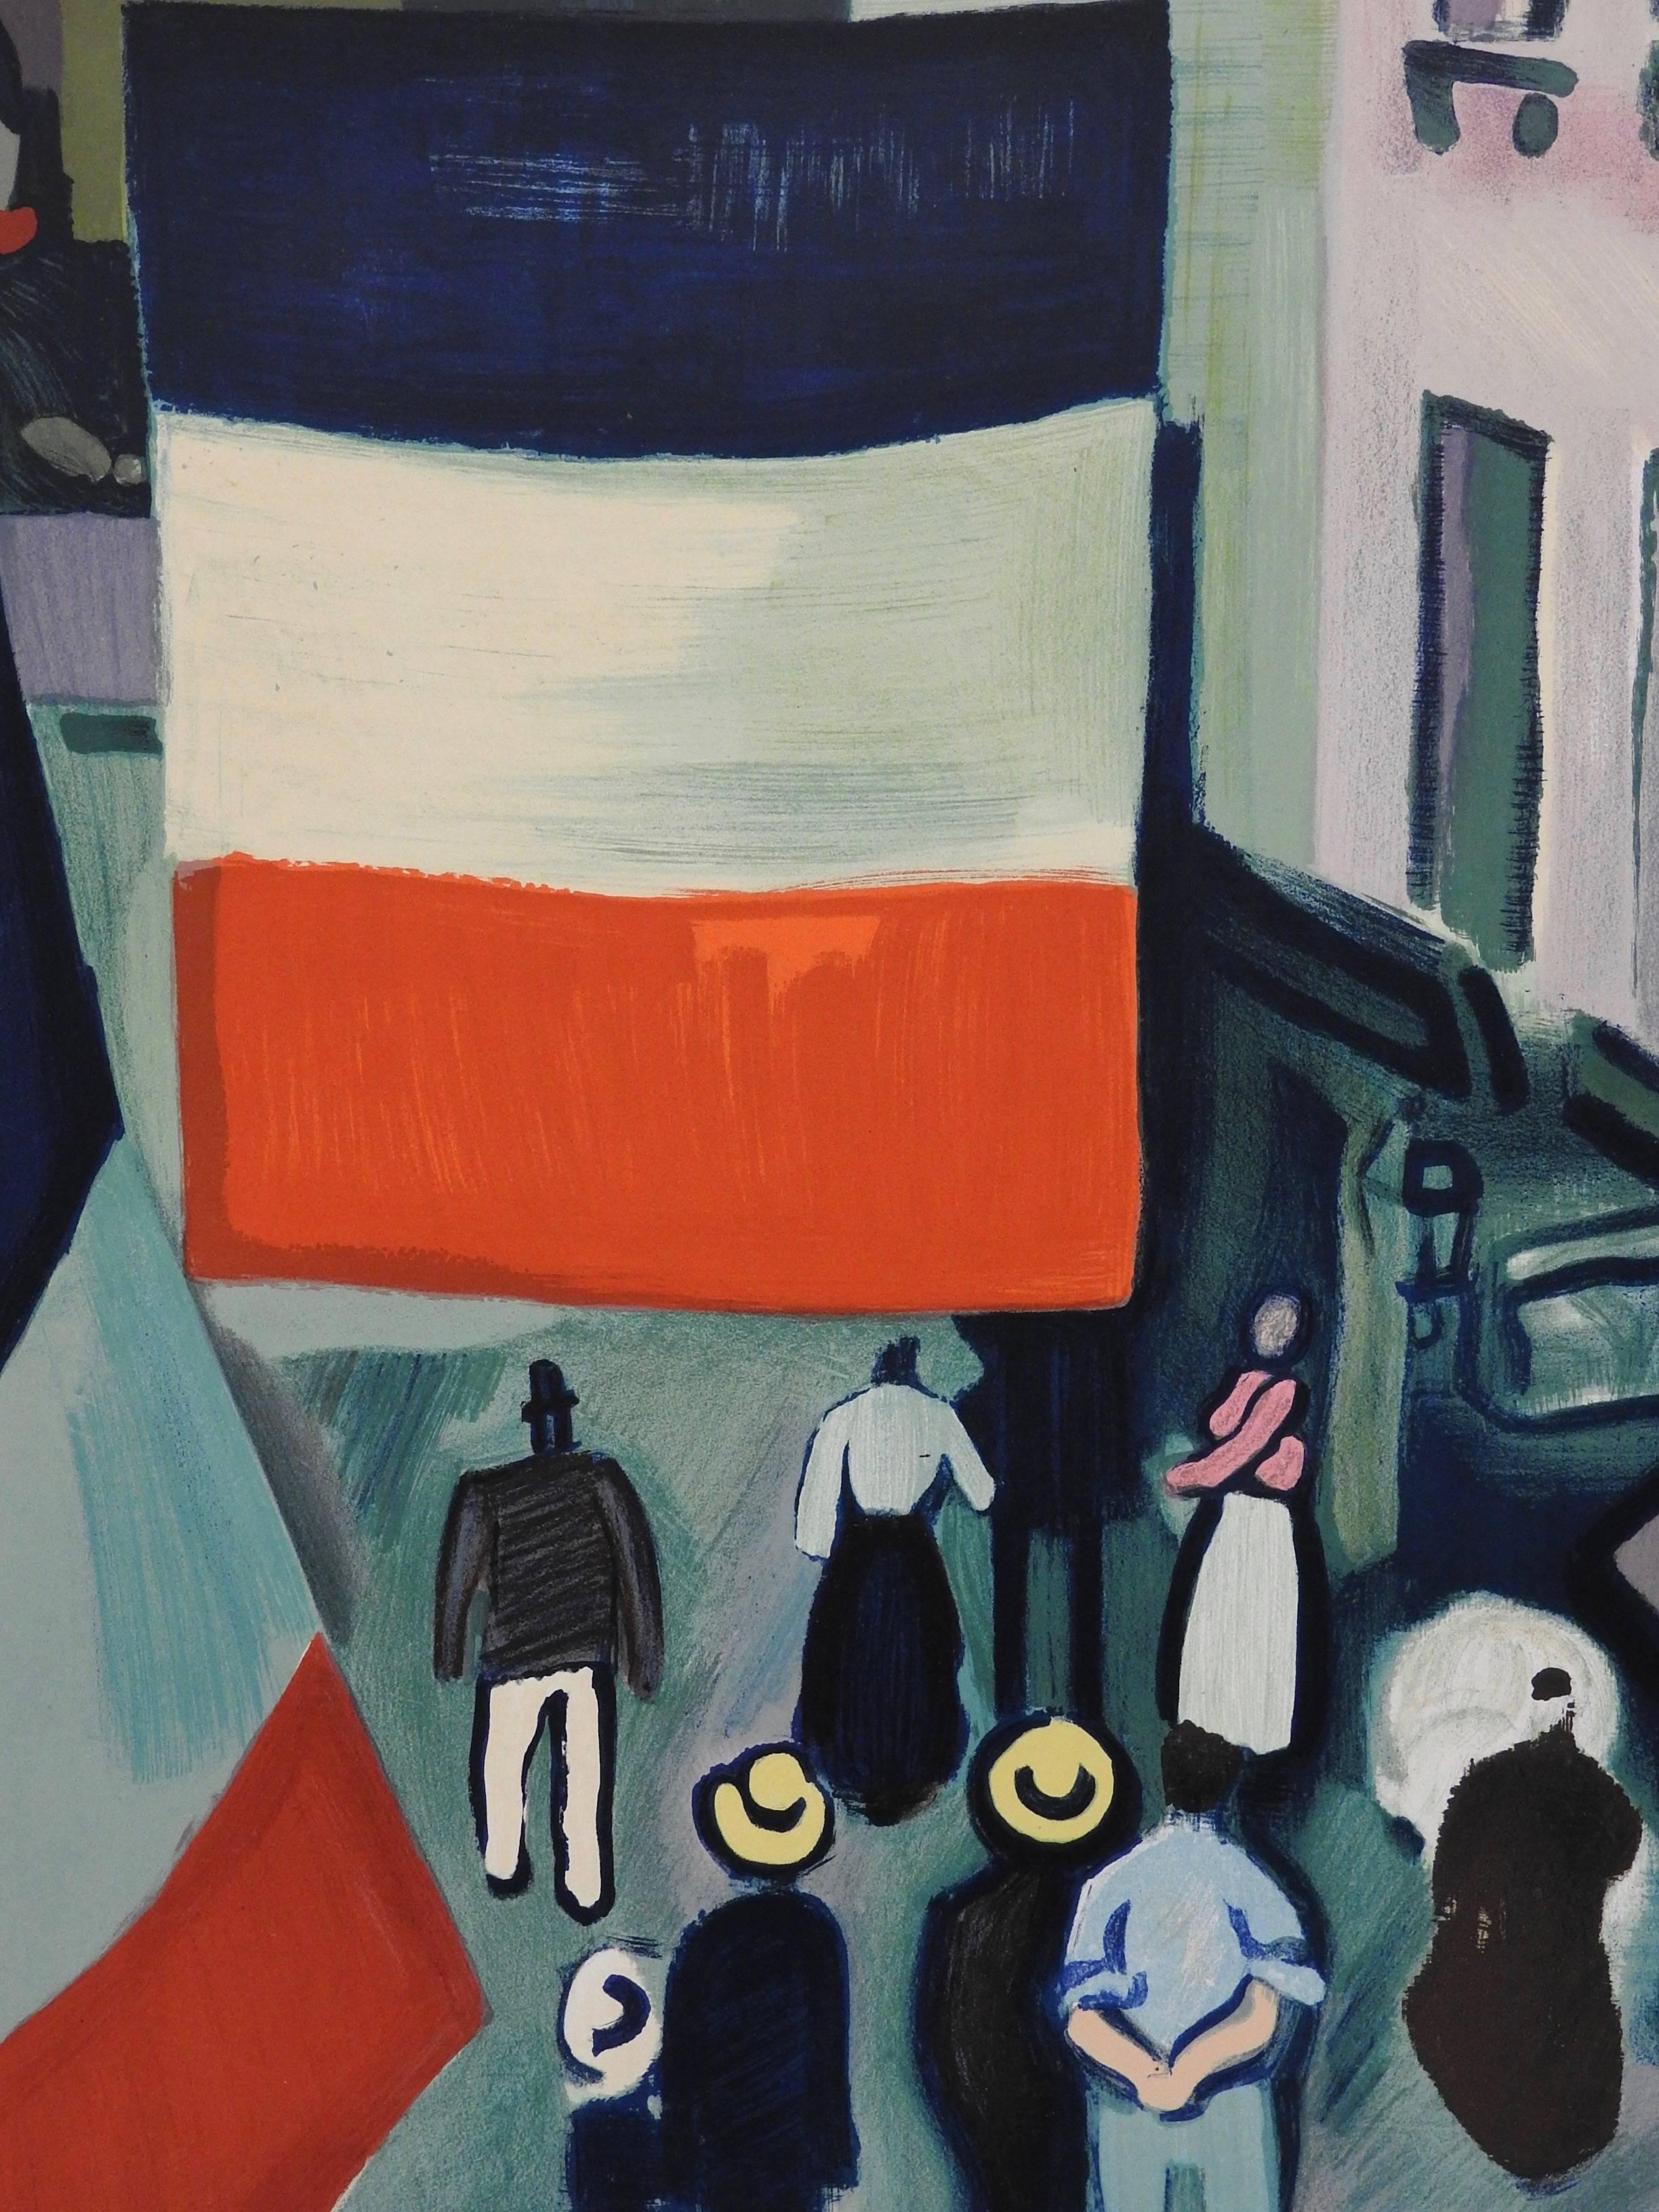 Les peintres Témoins de leur temps - Print by Raoul Dufy